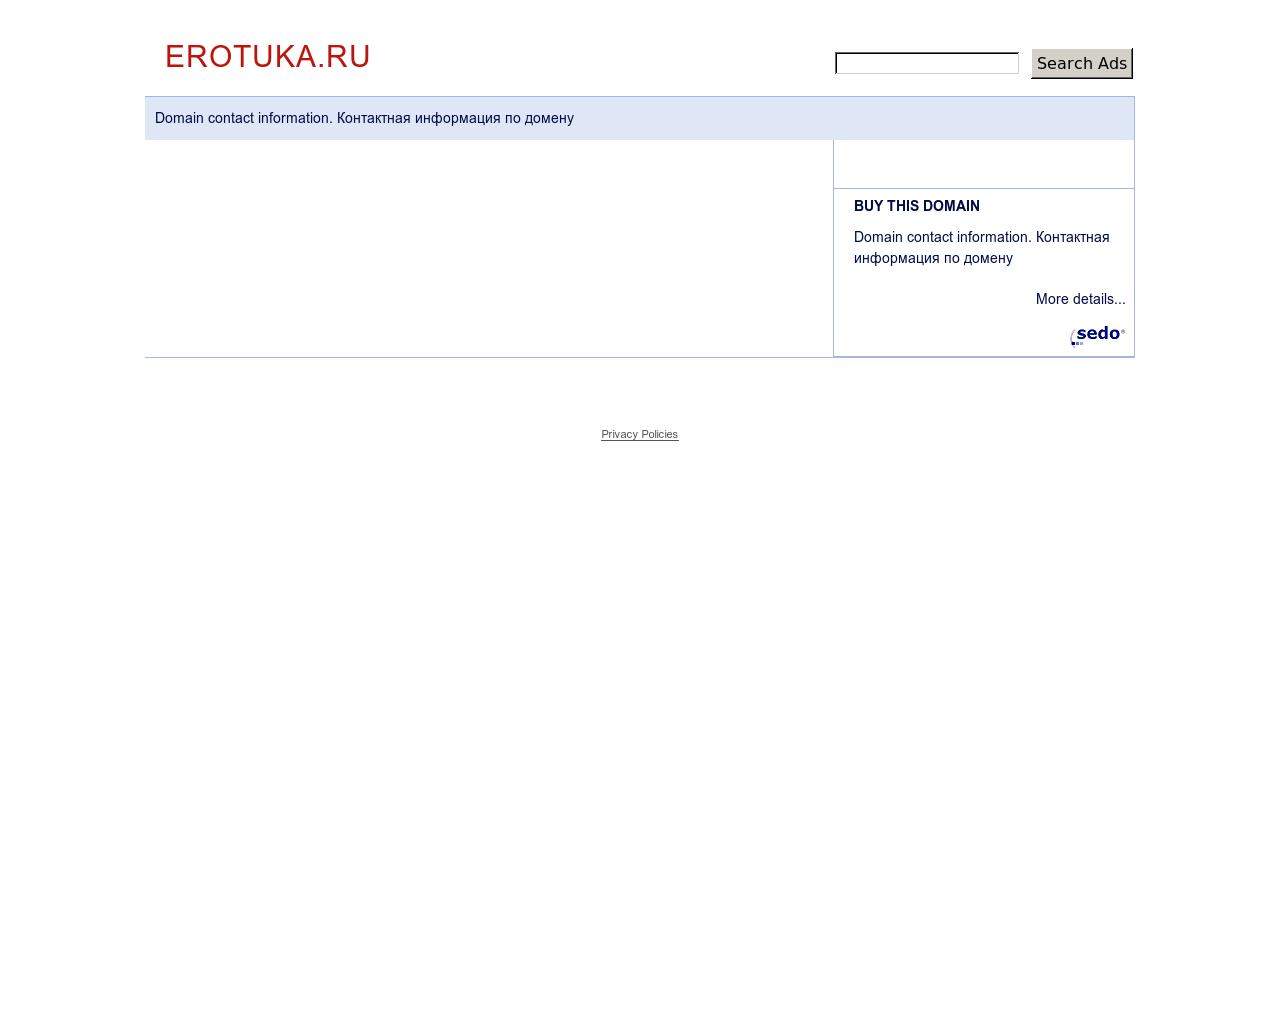 Изображение сайта erotuka.ru в разрешении 1280x1024